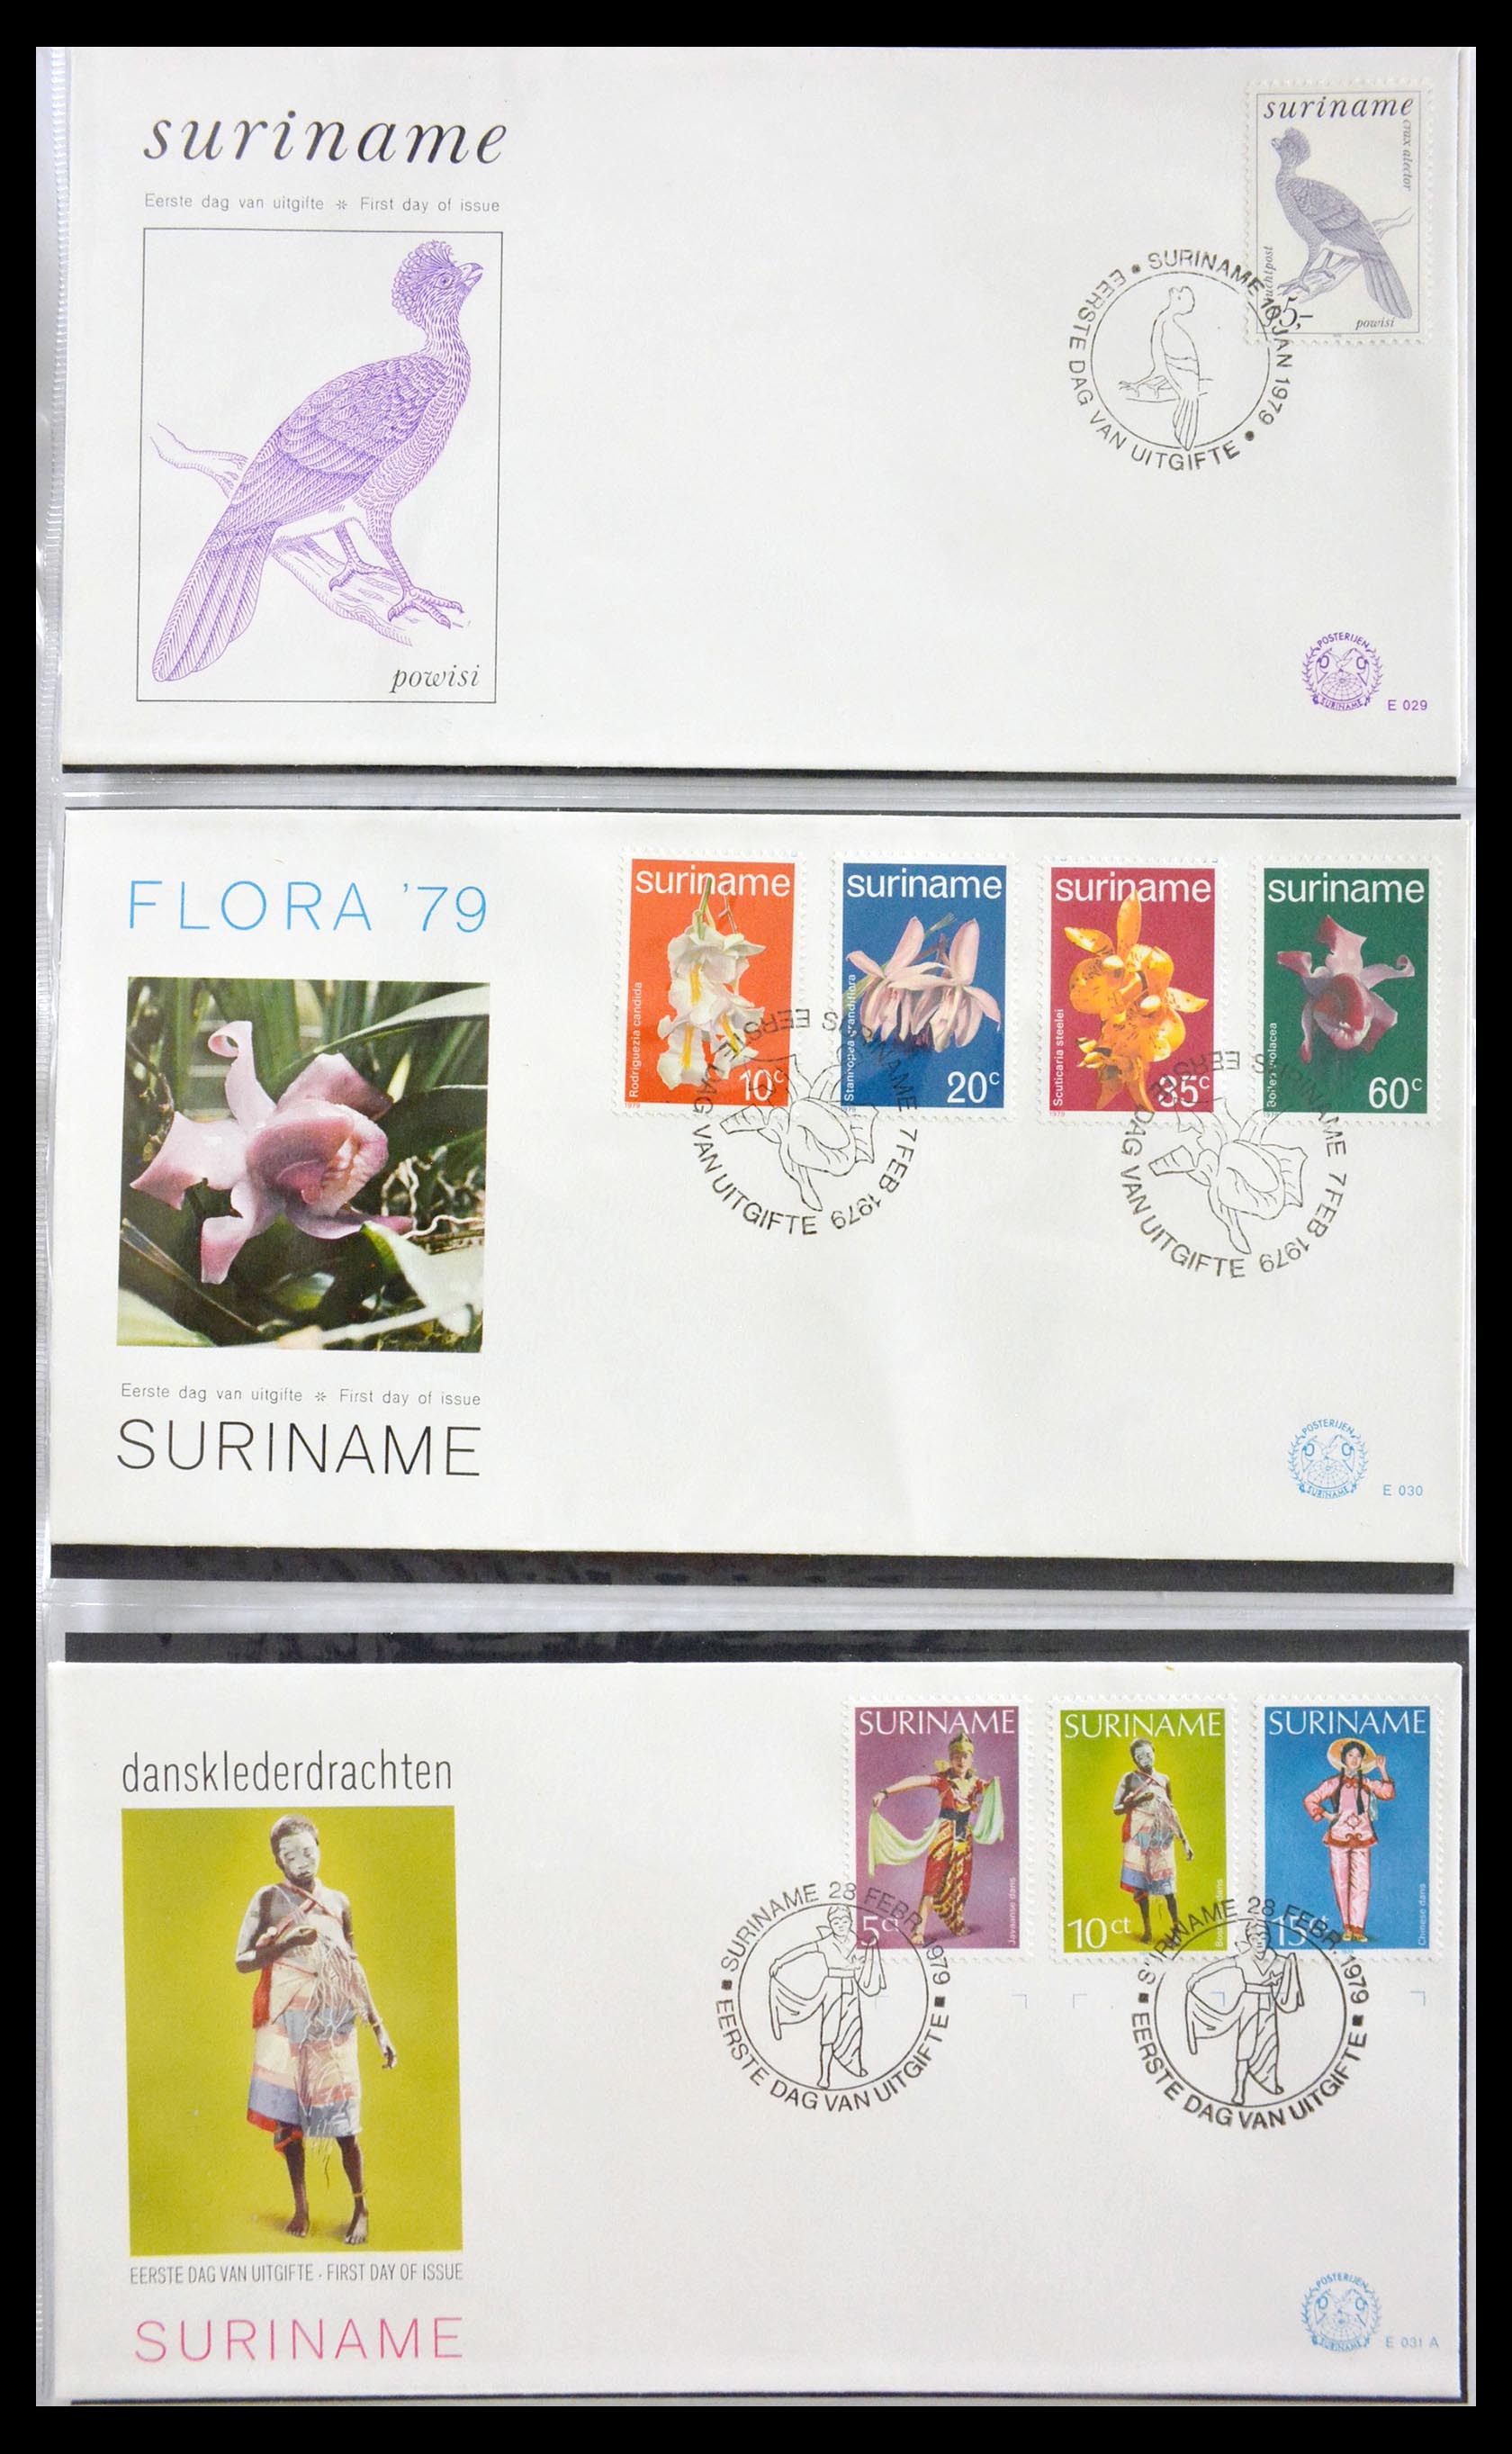 29669 017 - 29669 Suriname FDC's 1975-2011.